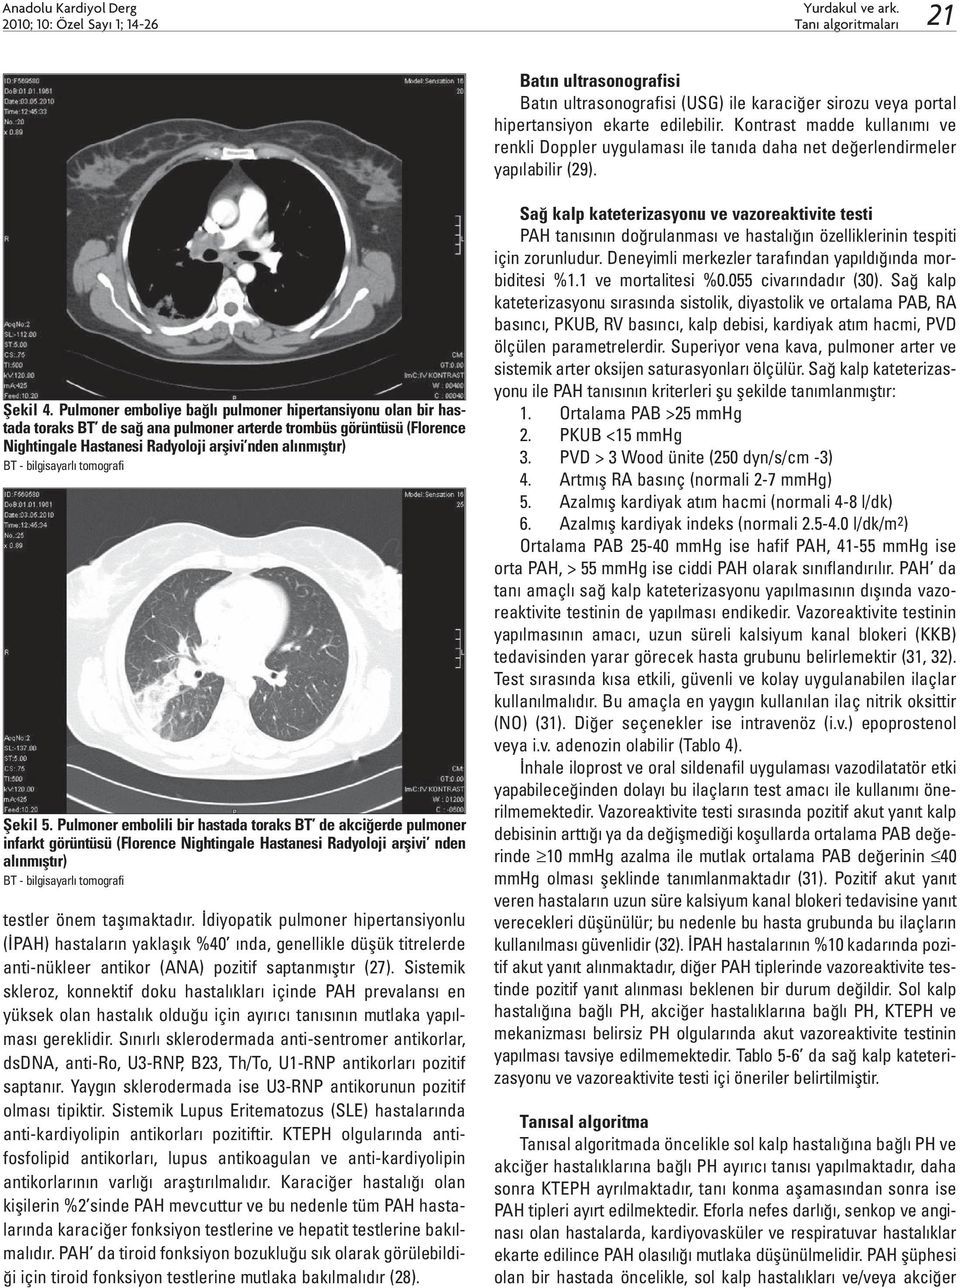 Pulmoner emboliye bağlı pulmoner hipertansiyonu olan bir hastada toraks BT de sağ ana pulmoner arterde trombüs görüntüsü (Florence Nightingale Hastanesi Radyoloji arşivi nden alınmıştır) BT -